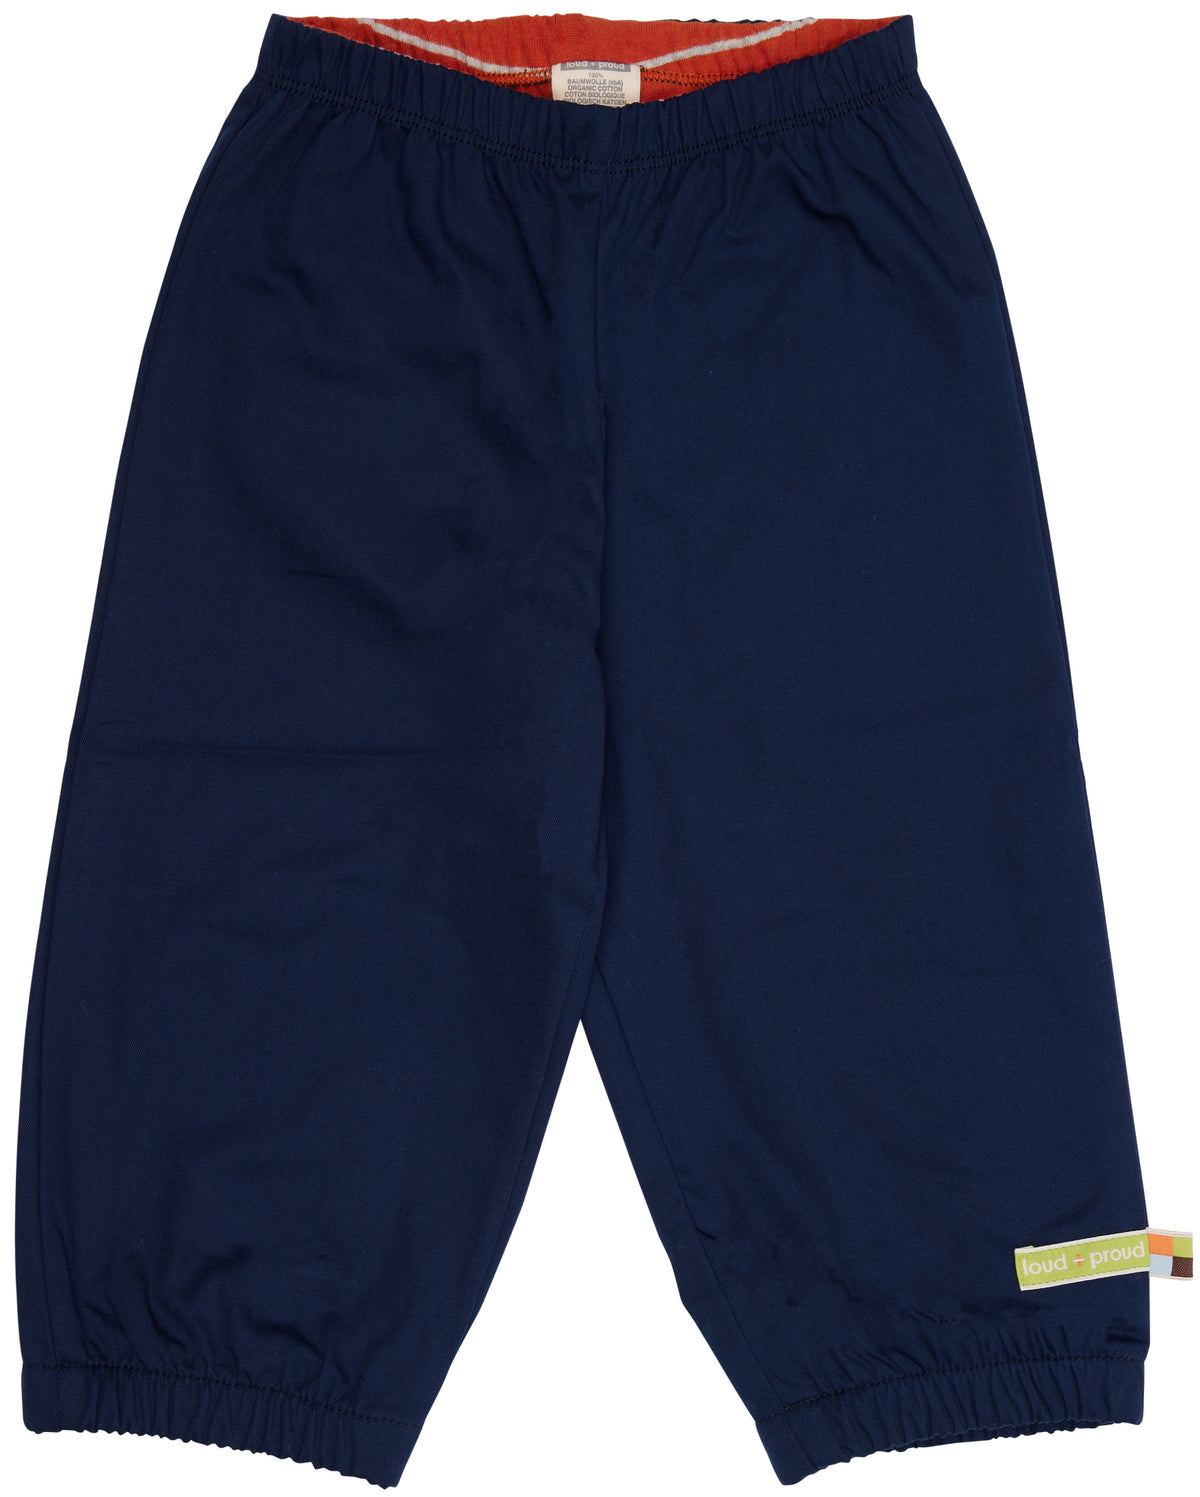 Schmutz/Wasserabweisende Hose in dunkelblau von loud+proud